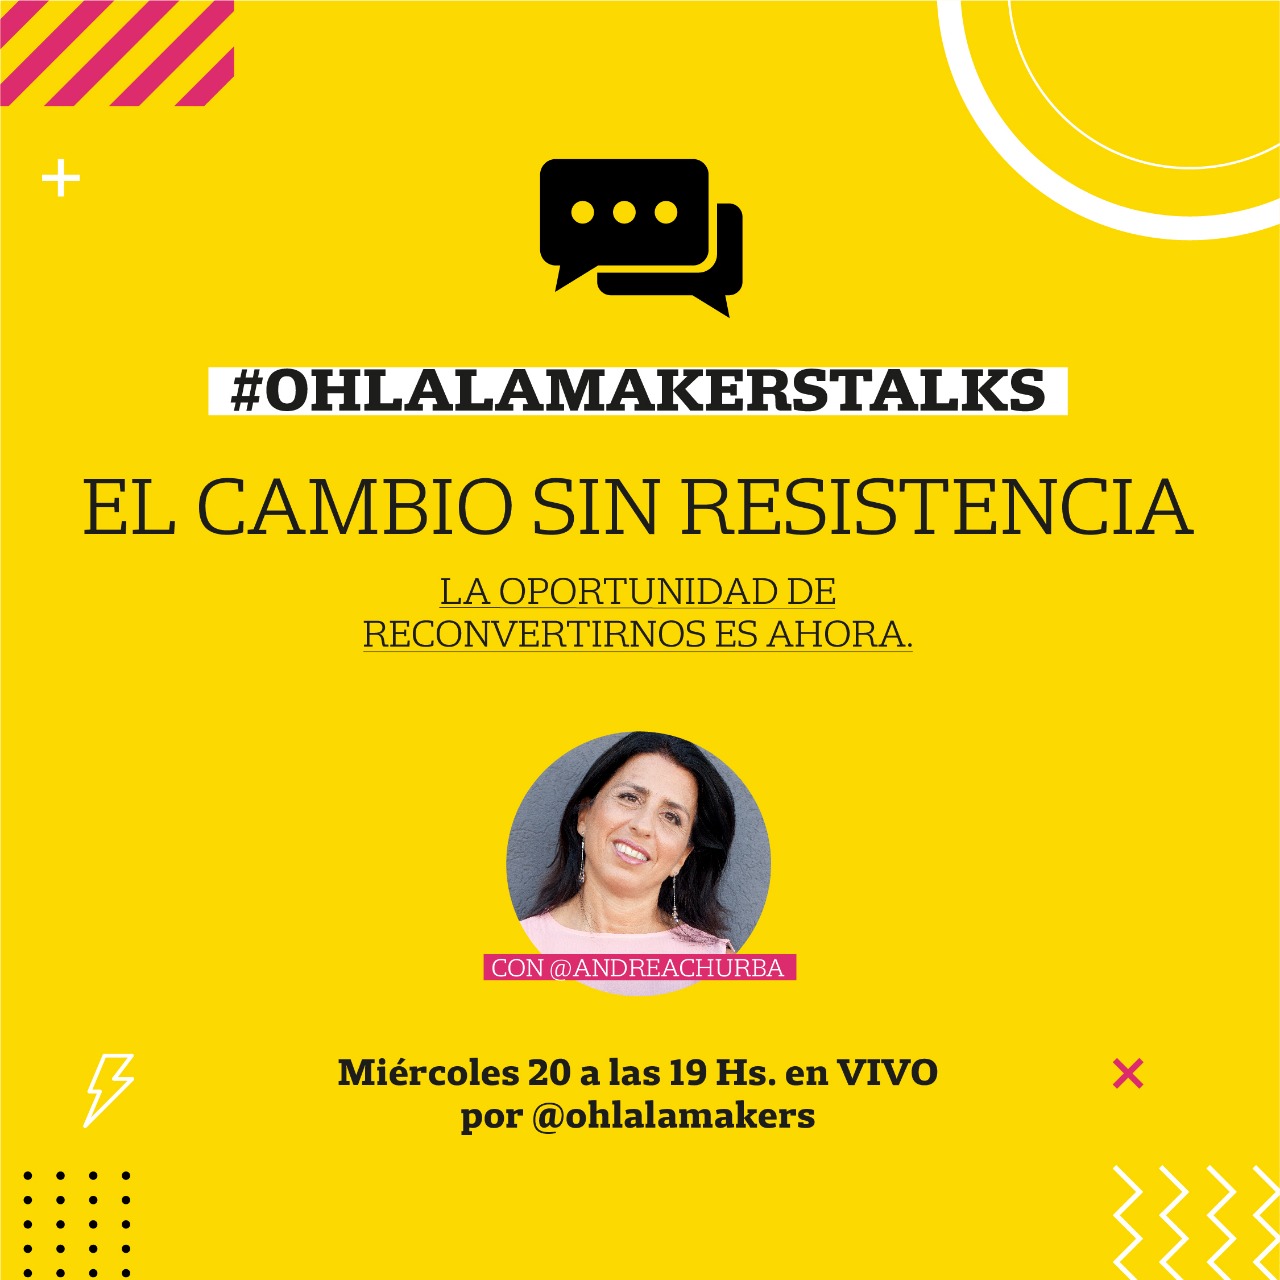 El Cambio sin resistencia de Andrea Churba en Ohlalá Makers Talks de Ohlala Makers